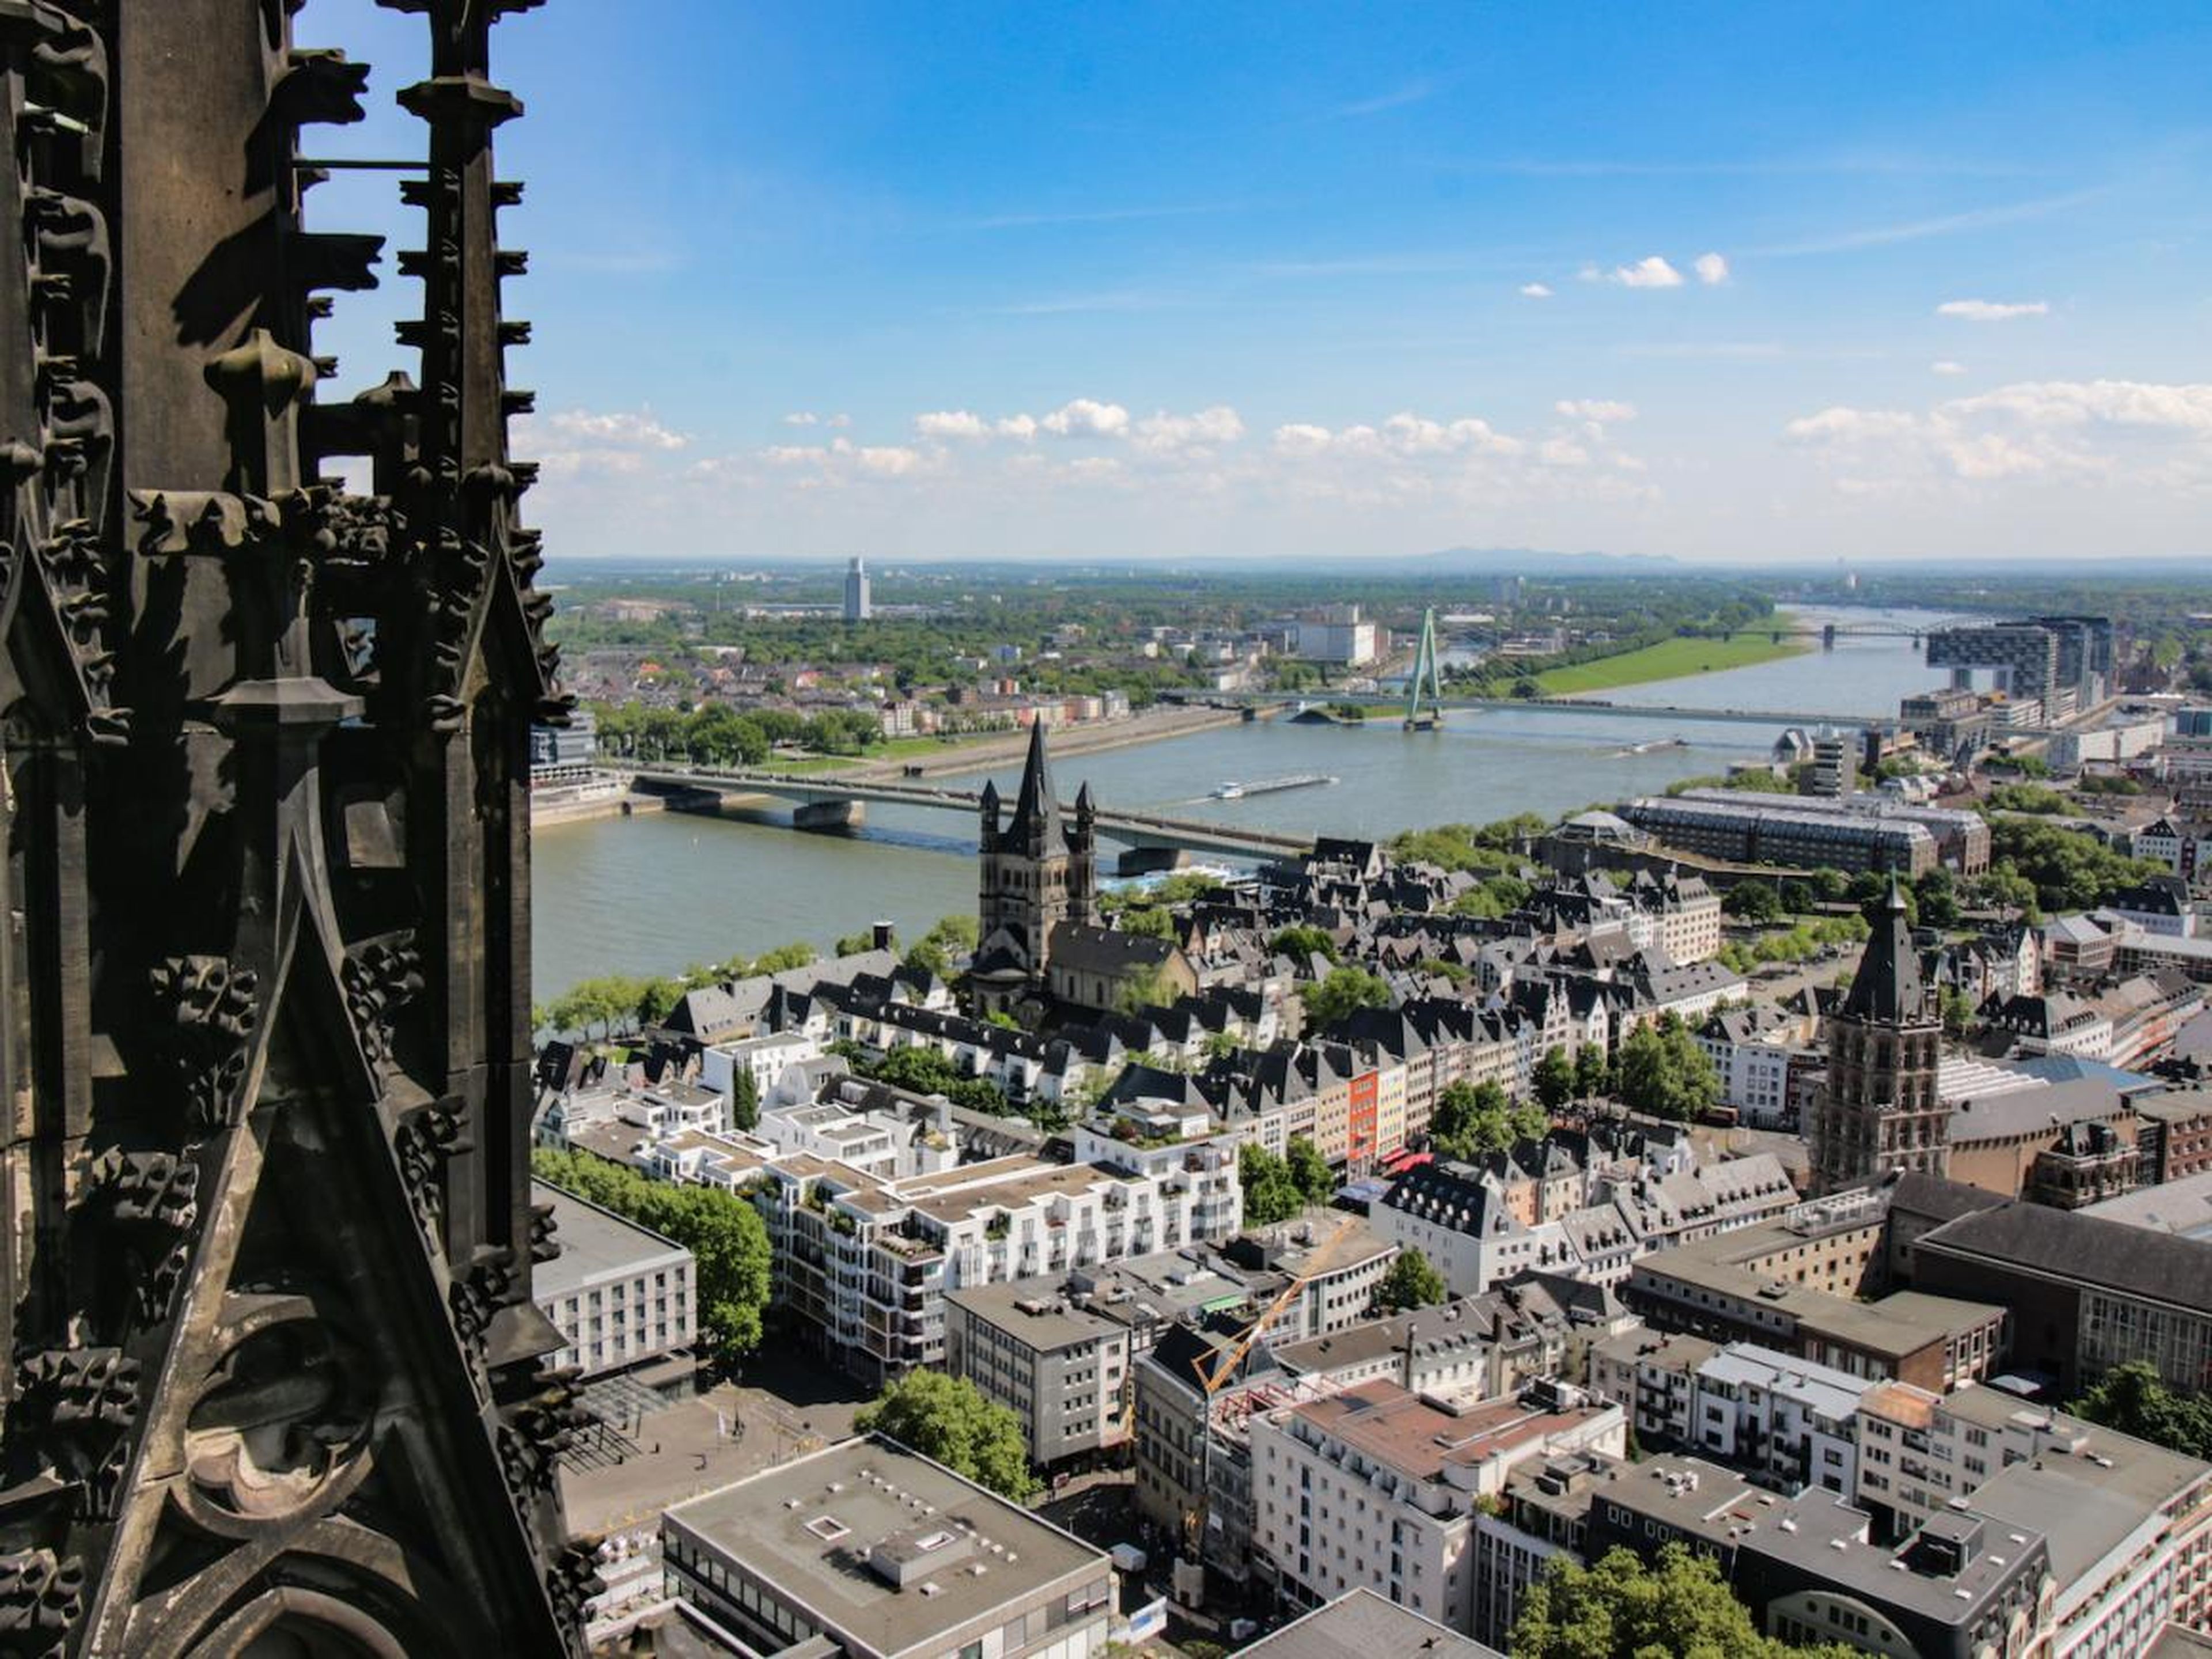 La vista desde la catedral de Colonia.